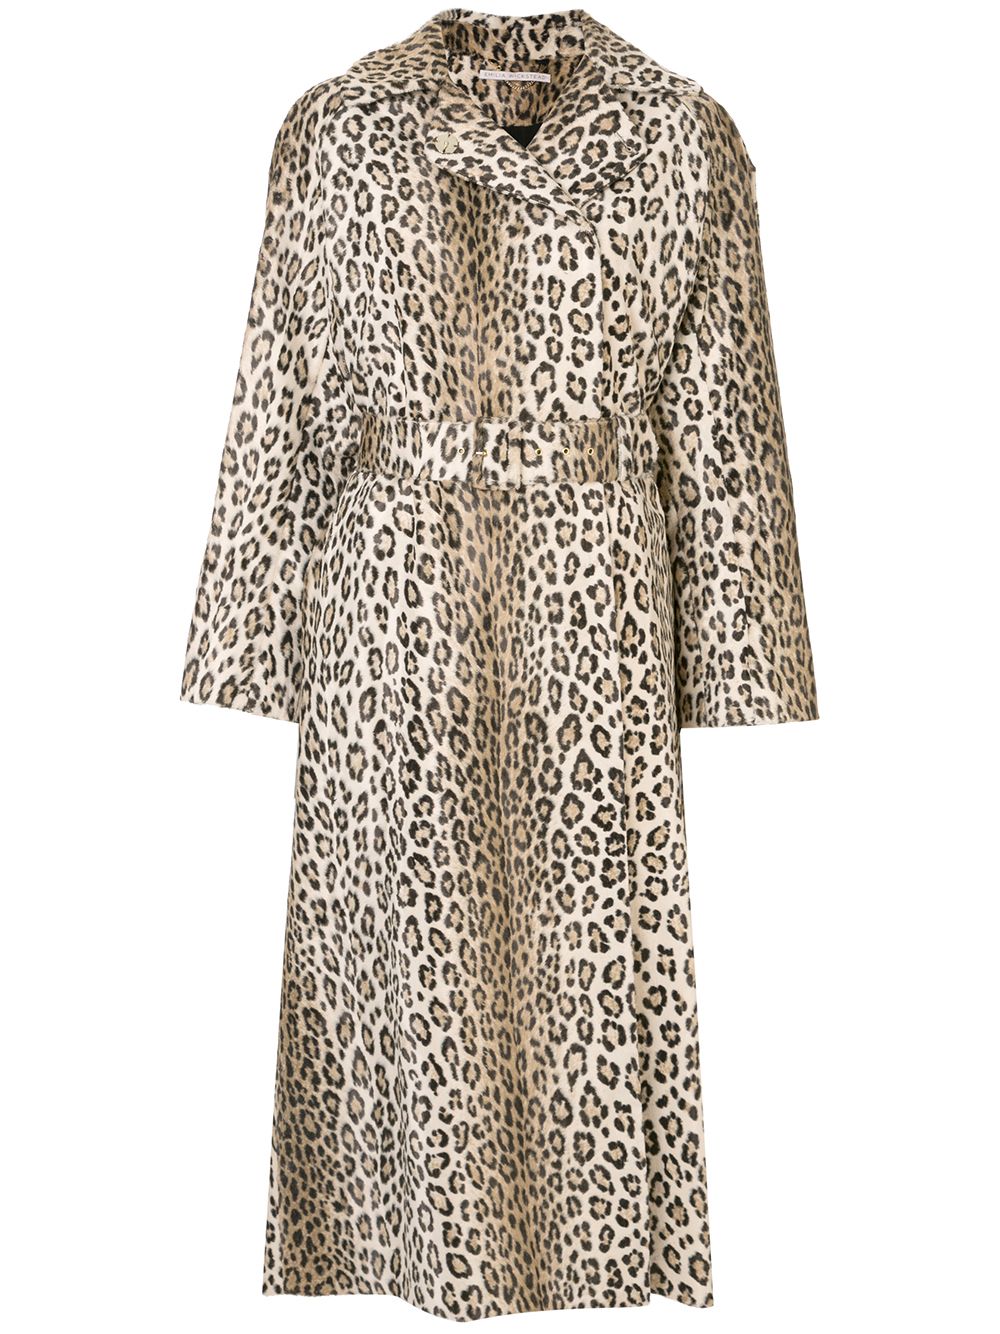 фото Emilia wickstead пальто с поясом и леопардовым принтом